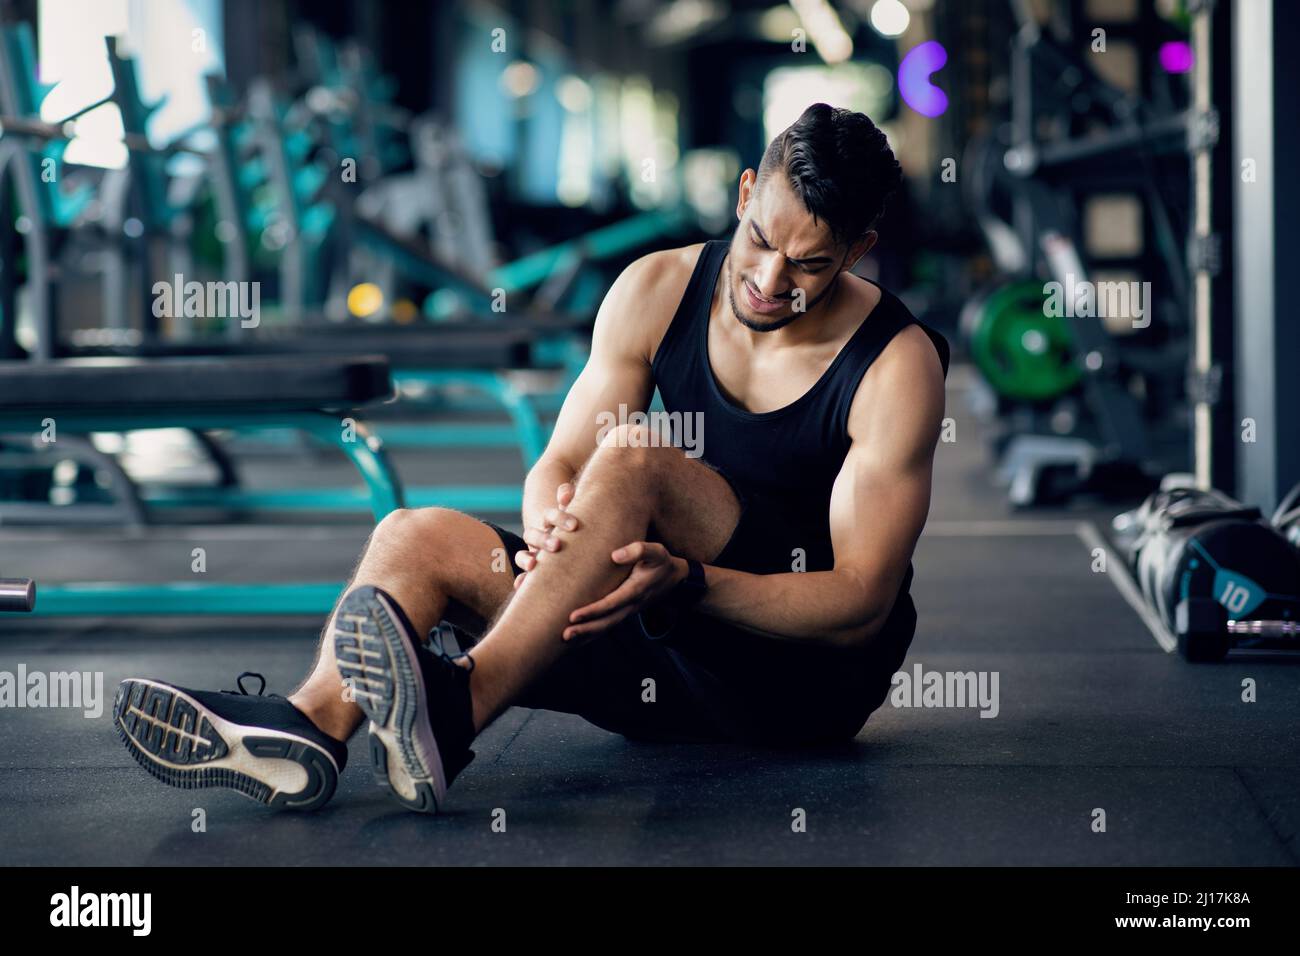 Blessures sportives. Athlète arabe souffrant de traumatisme du genou pendant l'entraînement à la salle de gym Banque D'Images